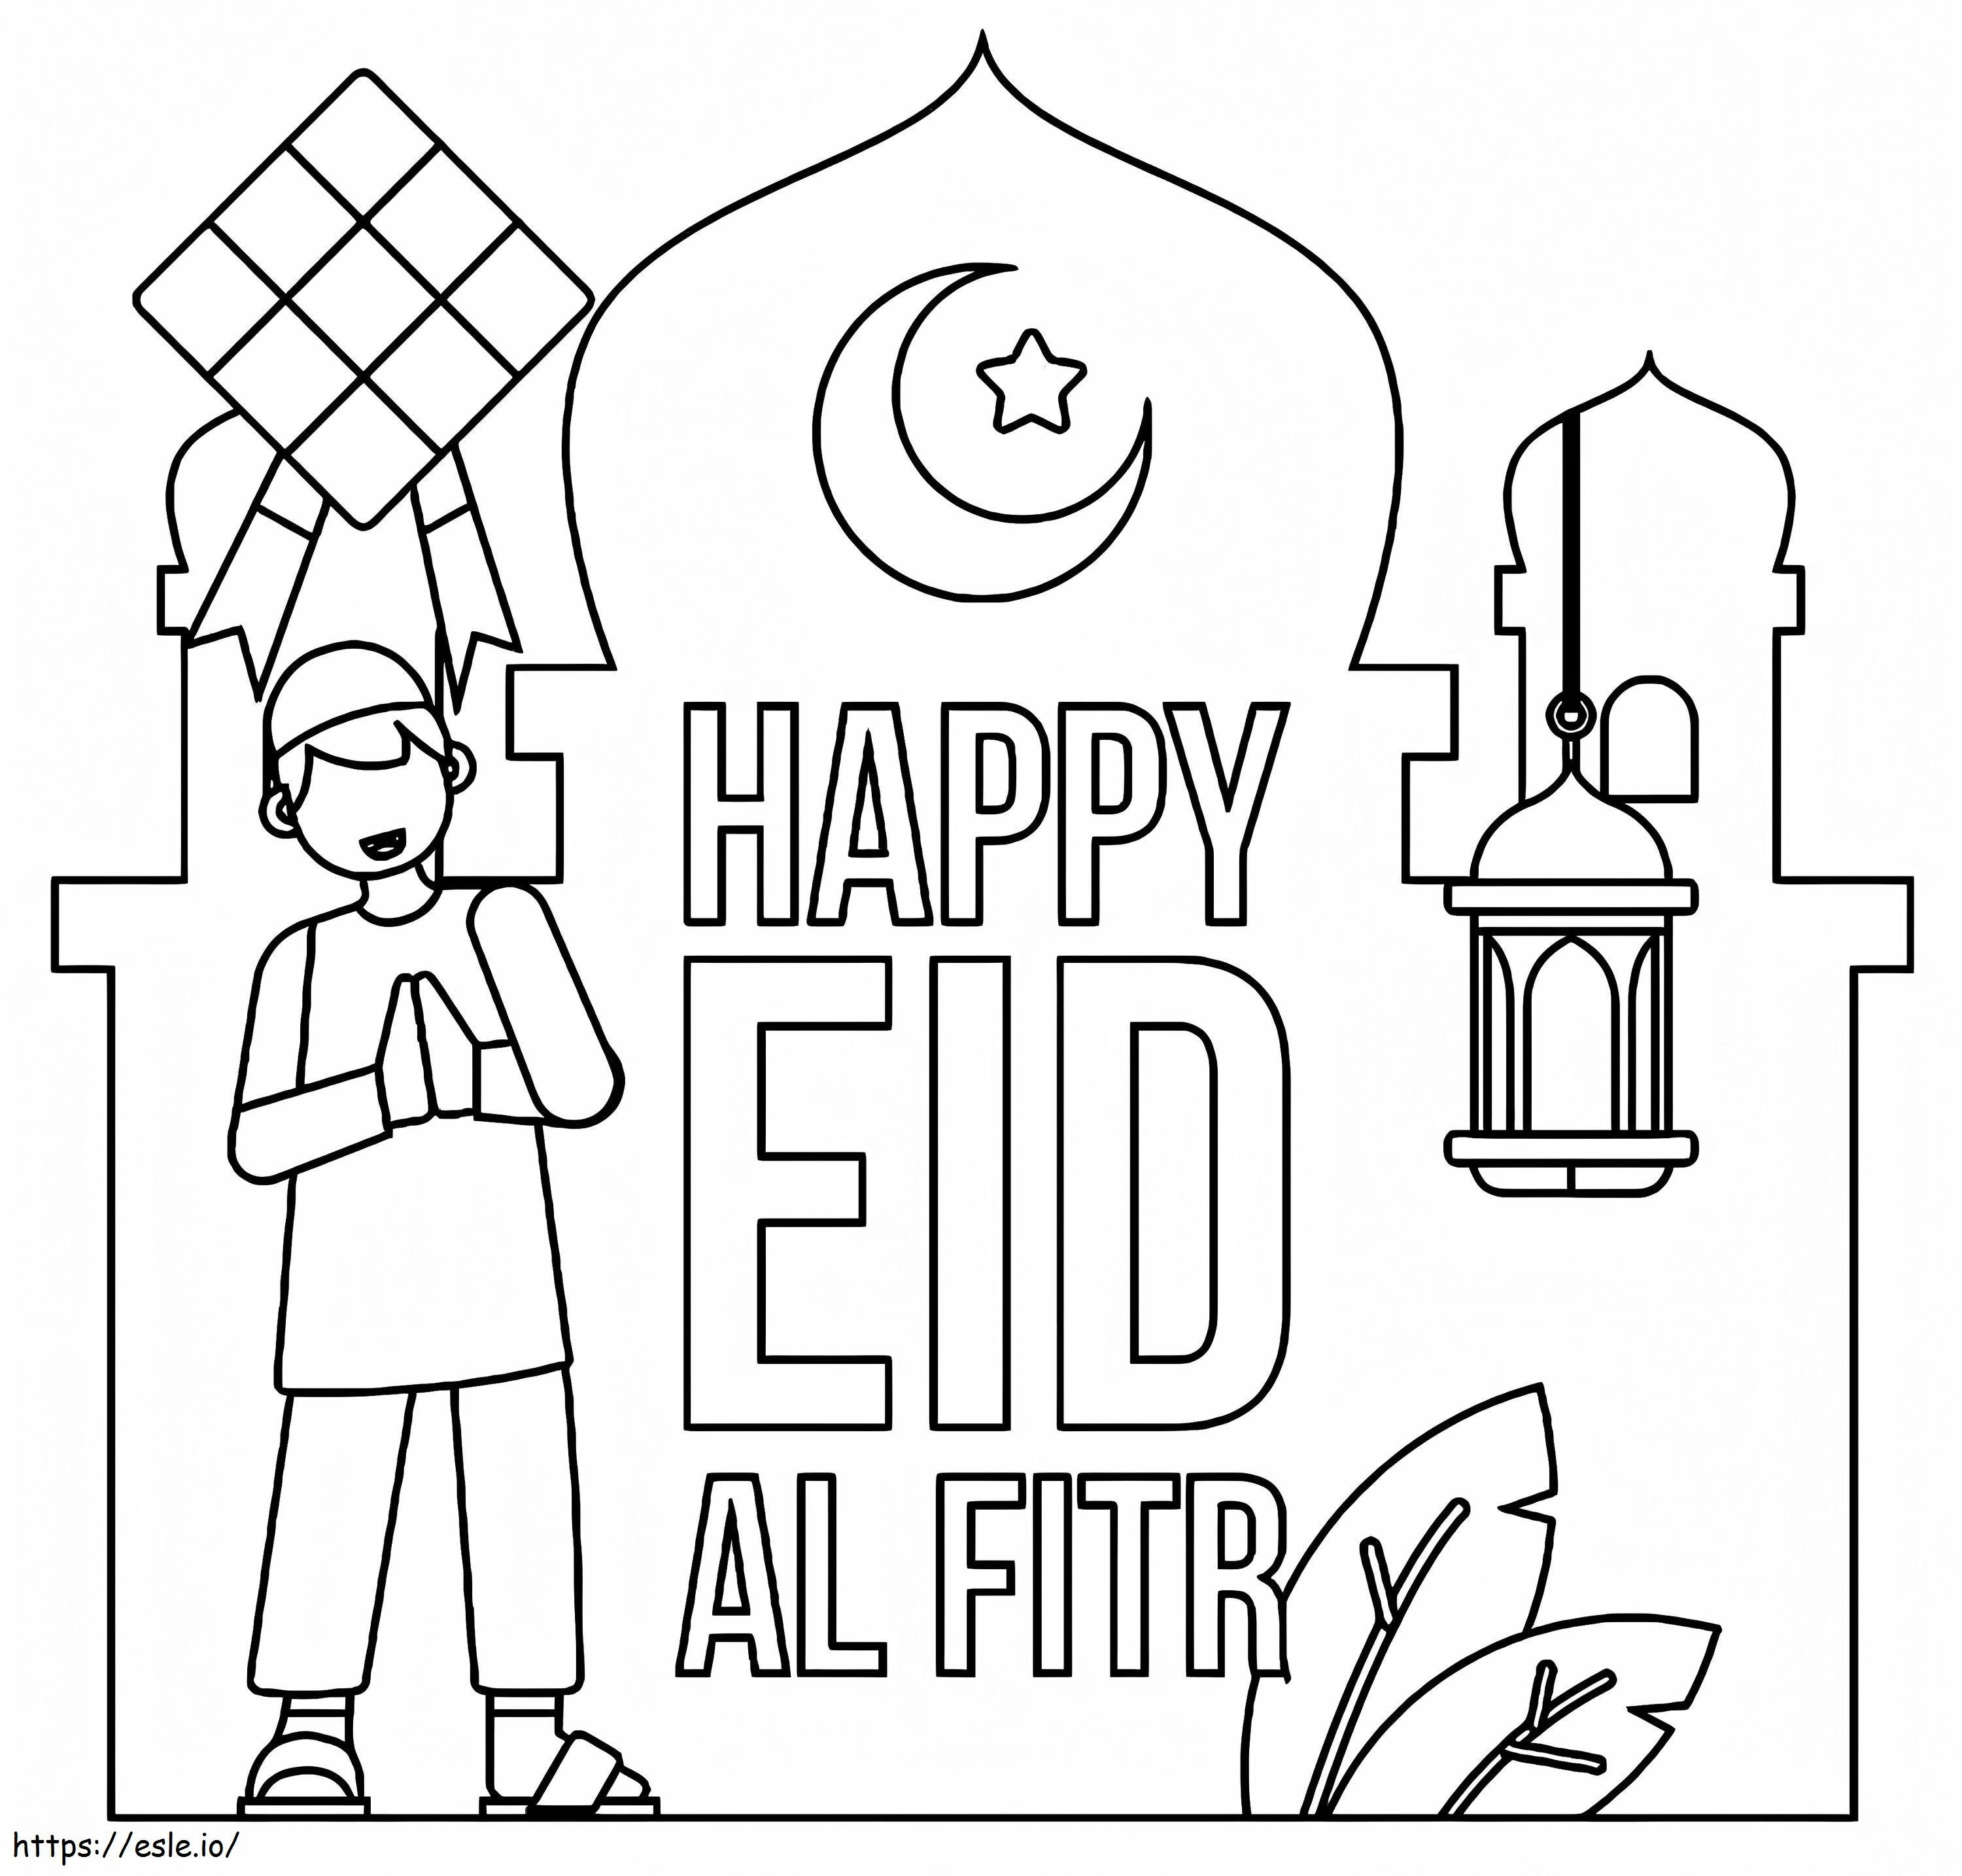 Happy Eid Al Fitr 1 coloring page